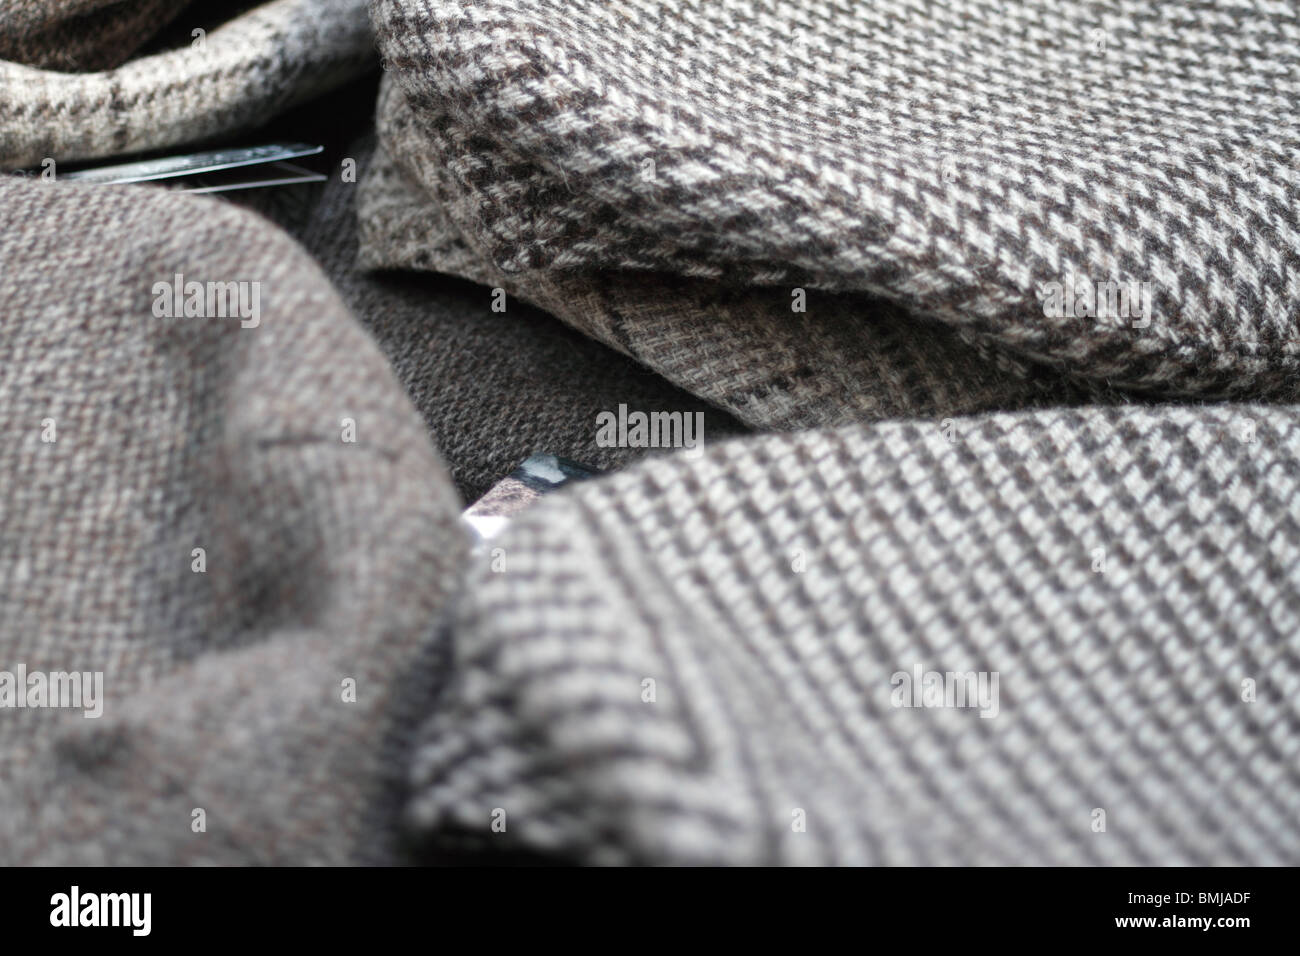 Une sélection de Tweed (télévision) casquette sur une table. Tweed est un rude, grossier, itchy, tissu de laine inachevé, d'un soft, ouvert, flexibl Banque D'Images